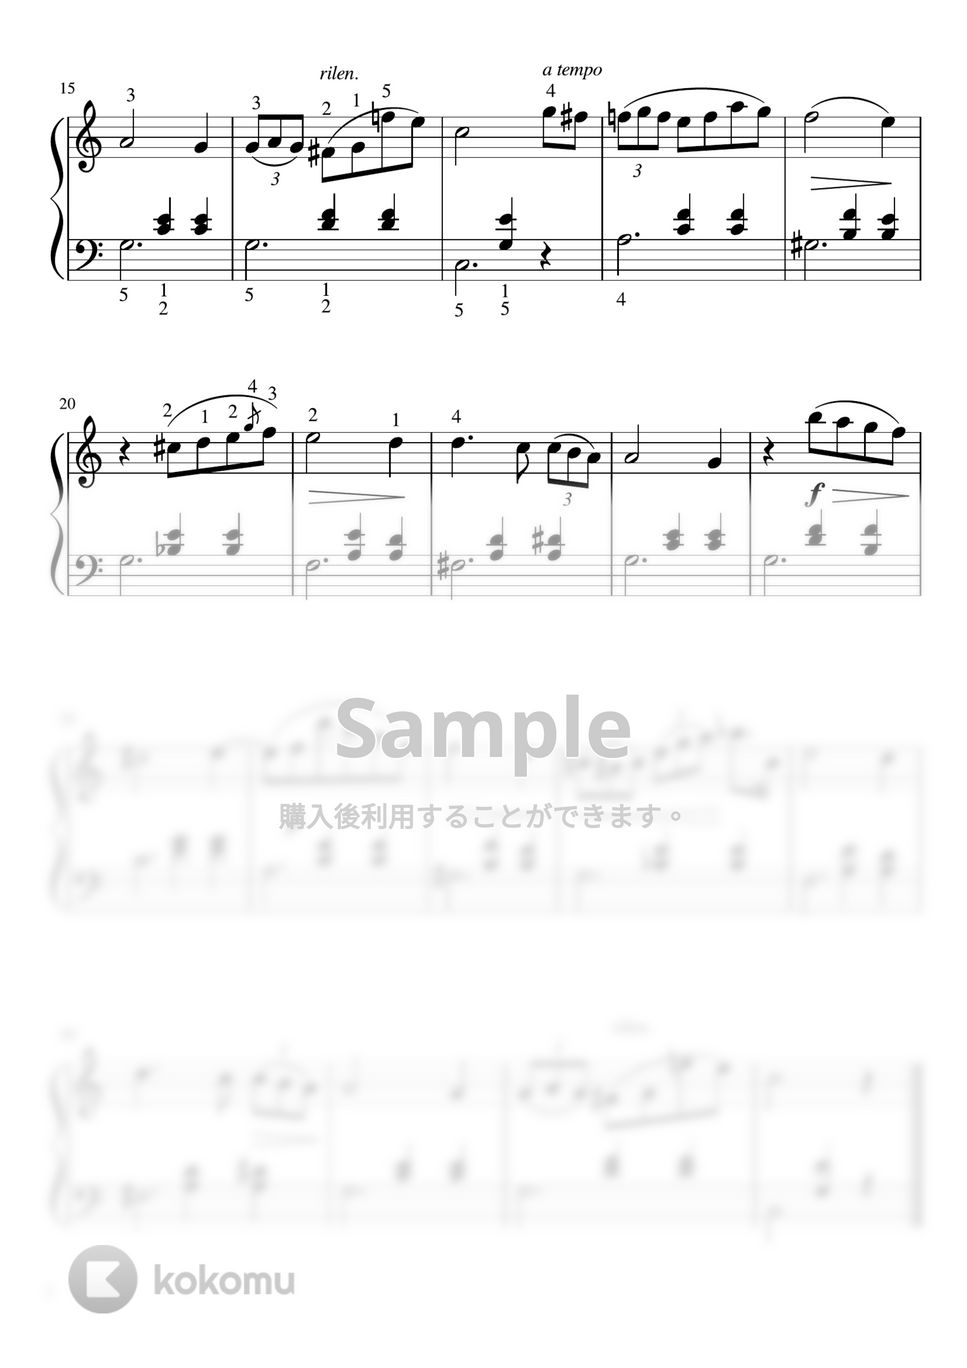 ショパン - 告別のワルツ (Am・ピアノソロ初〜中級) by pfkaori